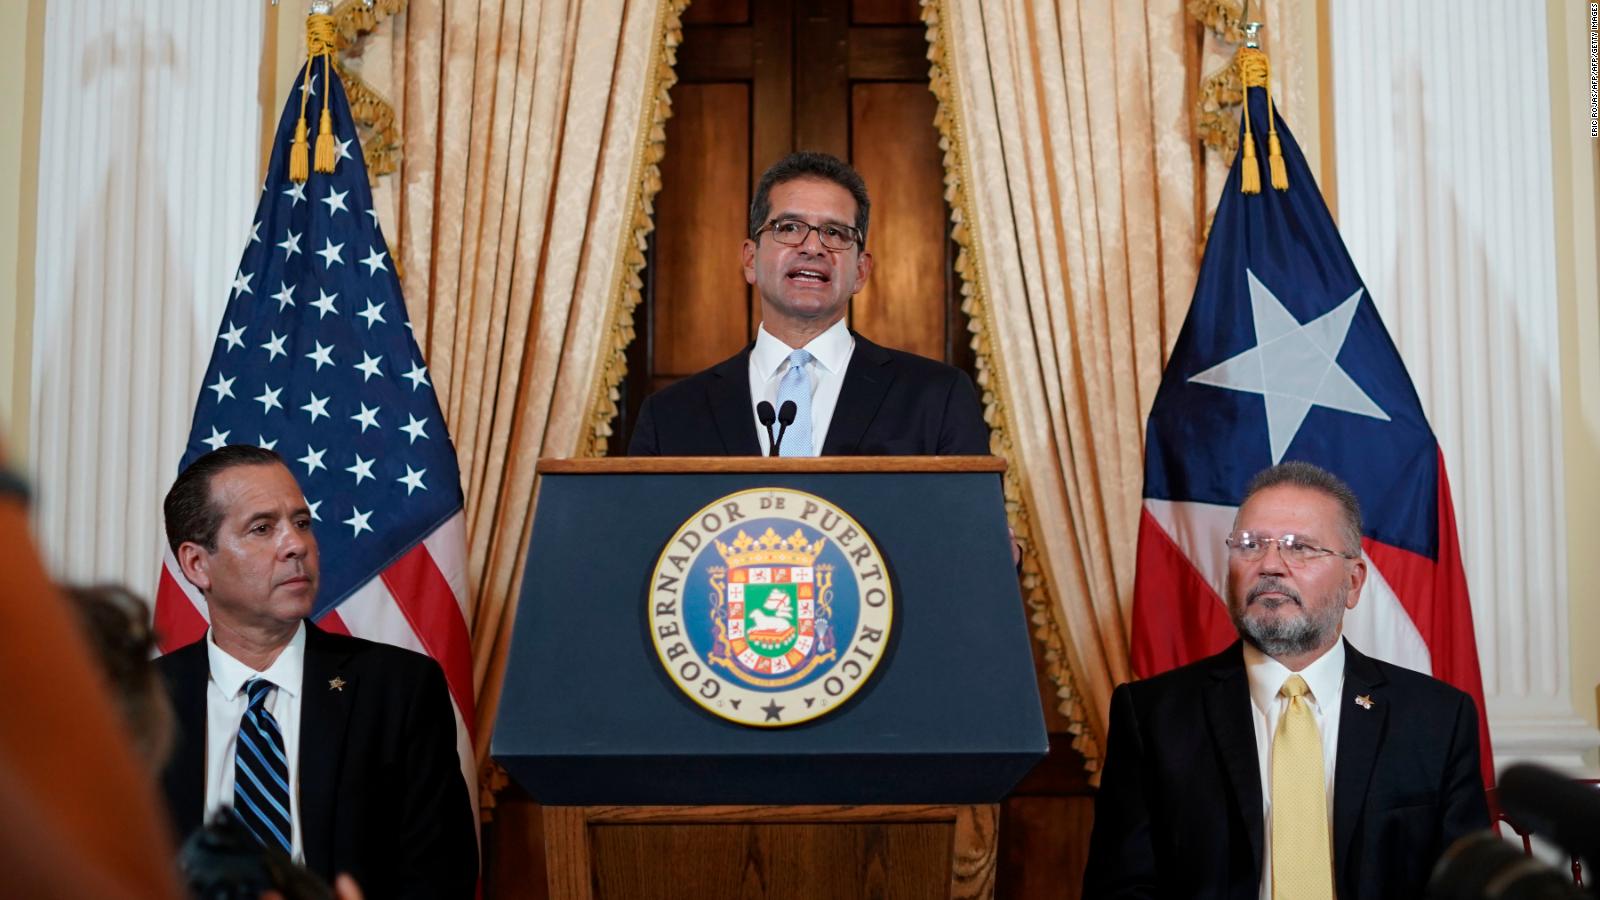 Gobernador de Puerto Rico: No vamos a parar hasta que tengamos la igualdad como estadounidenses | Video | CNN